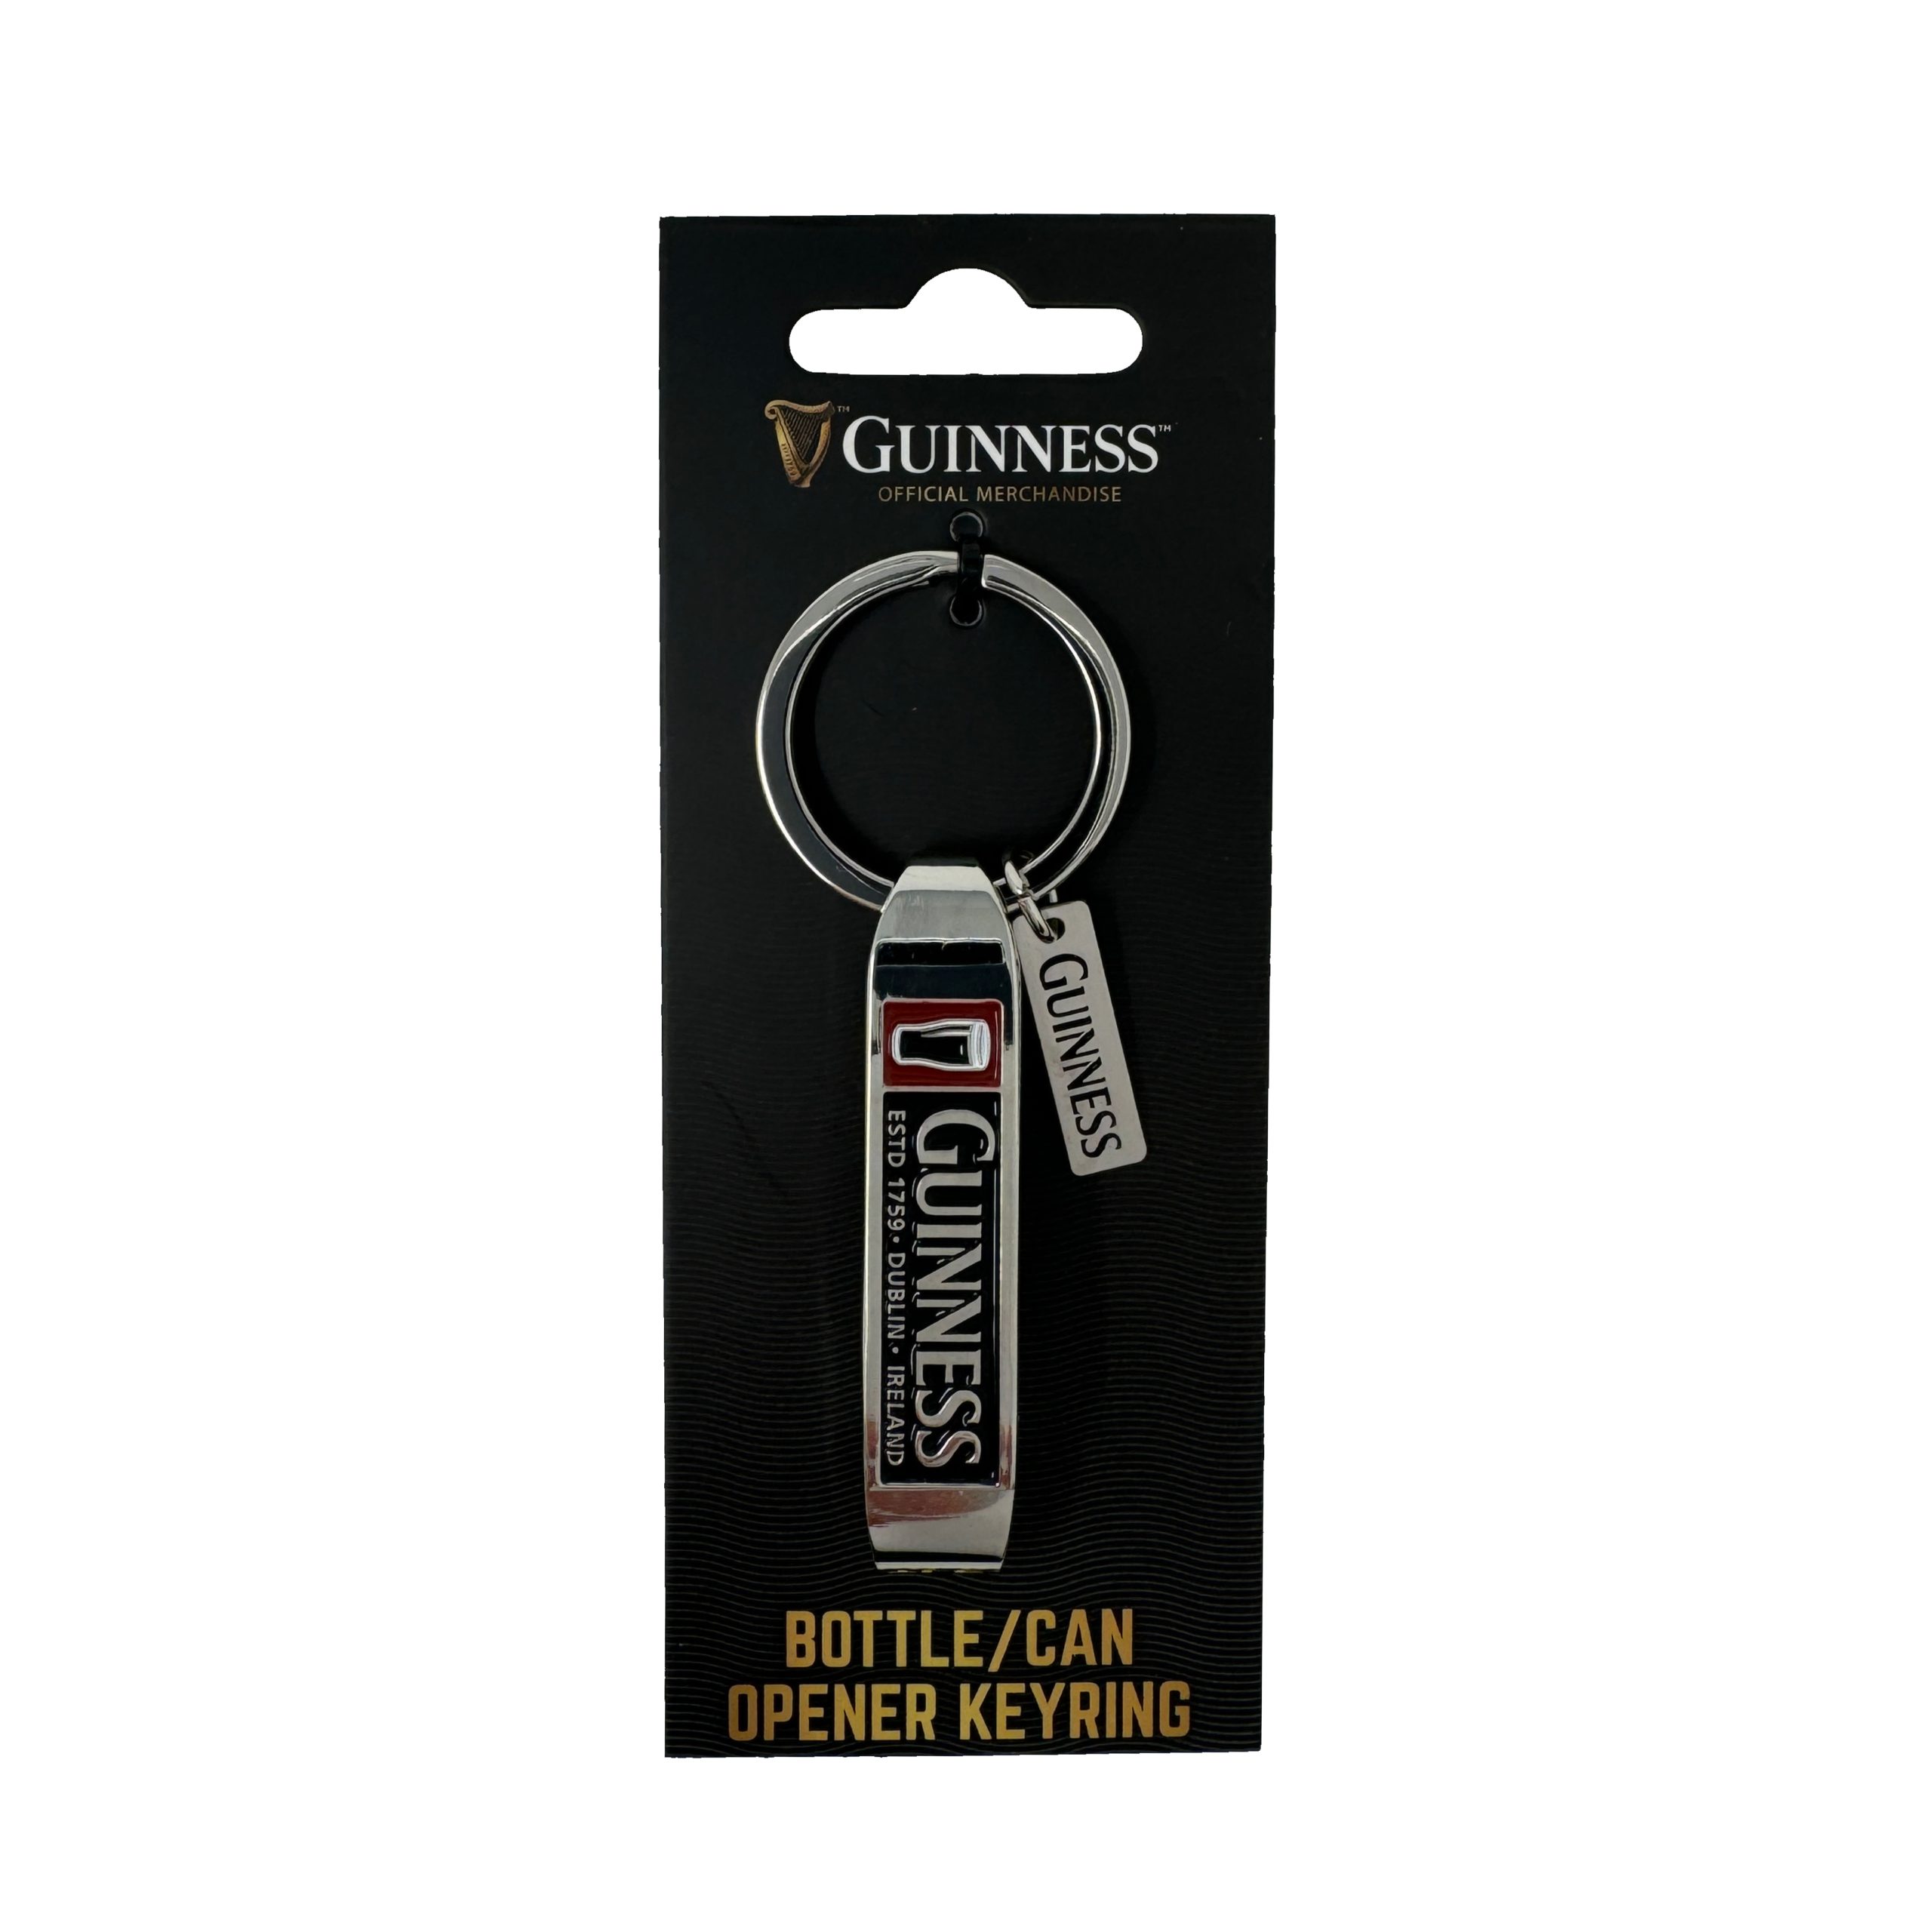 Guinness Bottle/Can Opener Keyring